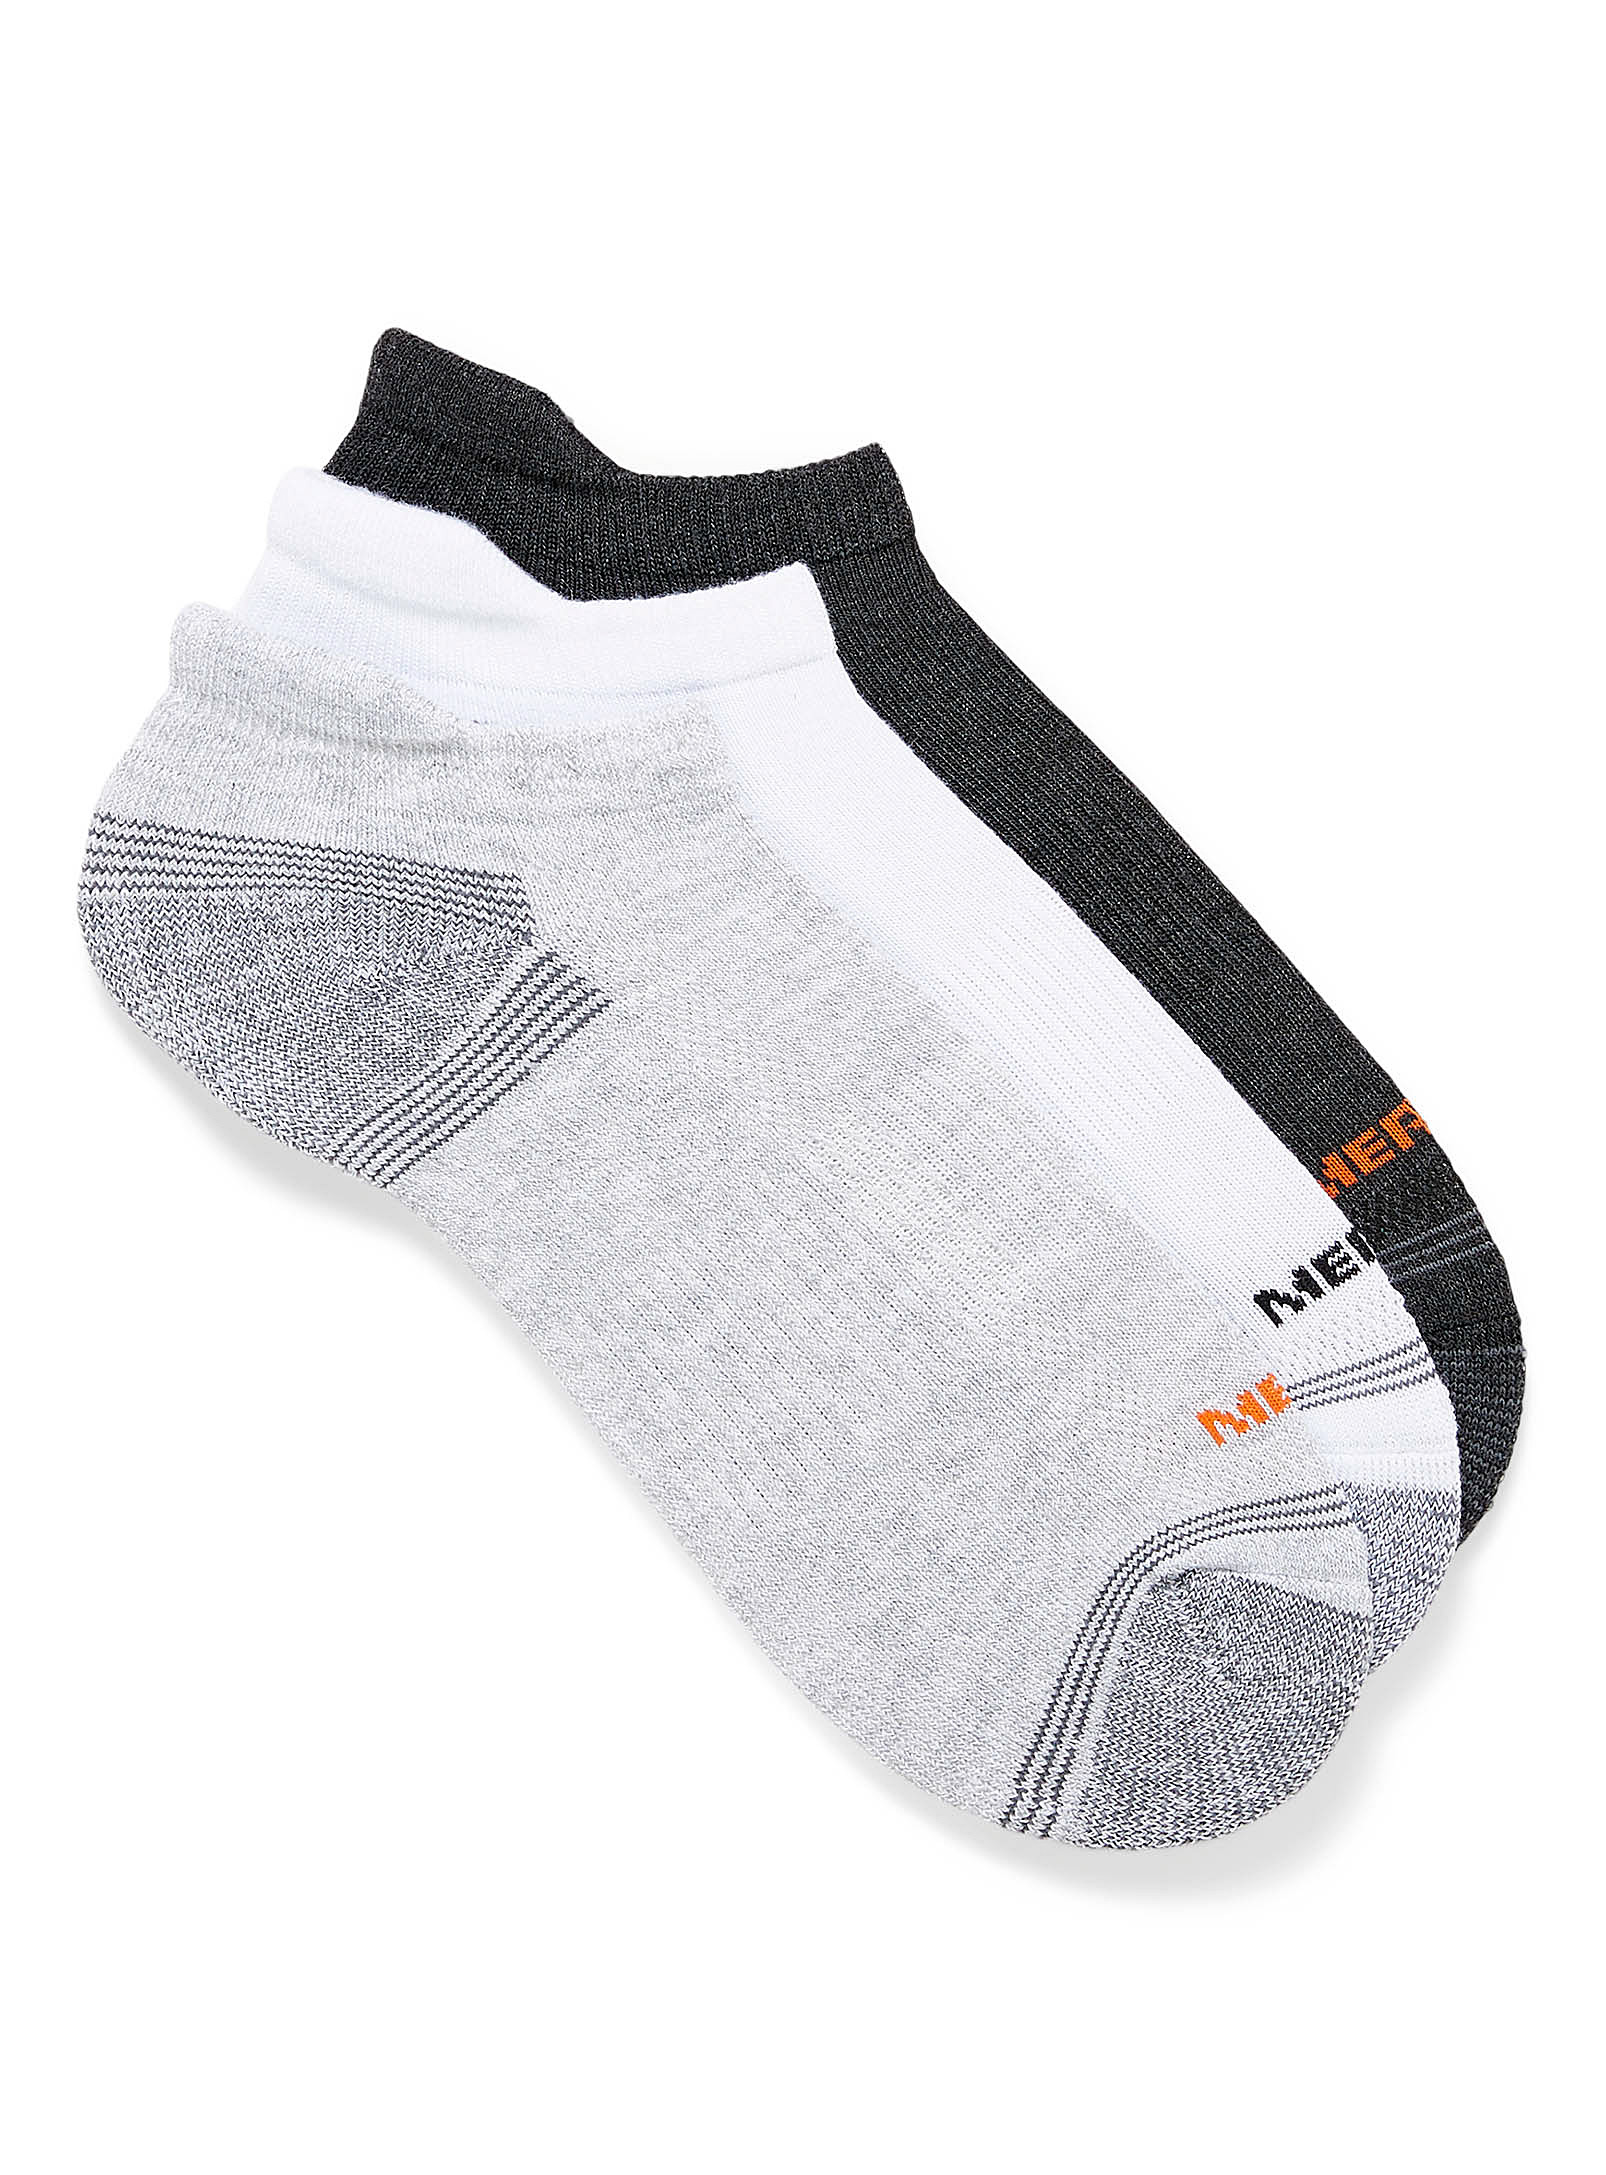 Merrell - Men's Reinforced heathered ped socks 3-pack